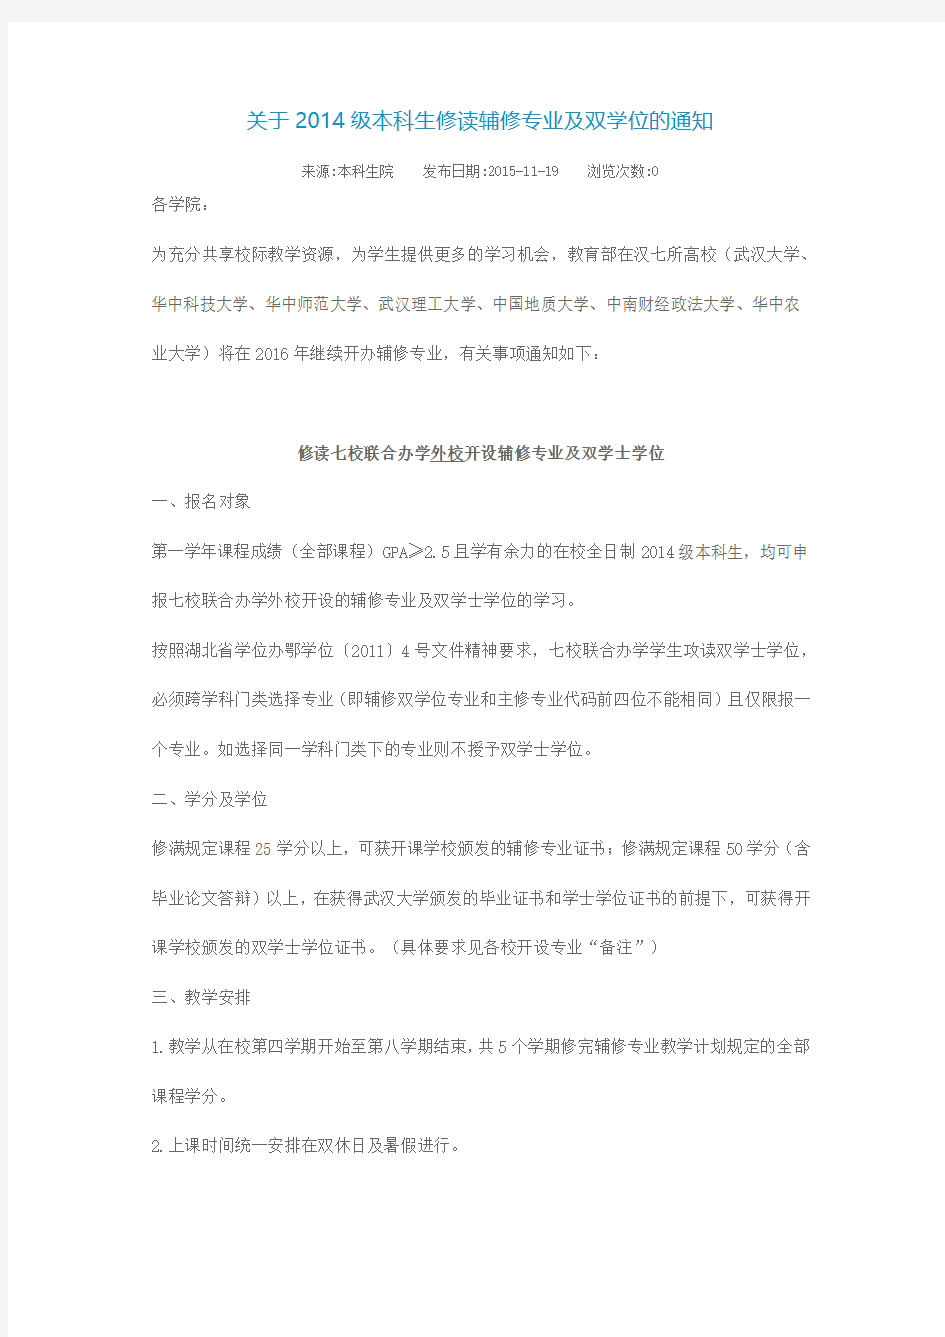 武汉大学关于2014级本科生修读辅修专业及双学位的通知